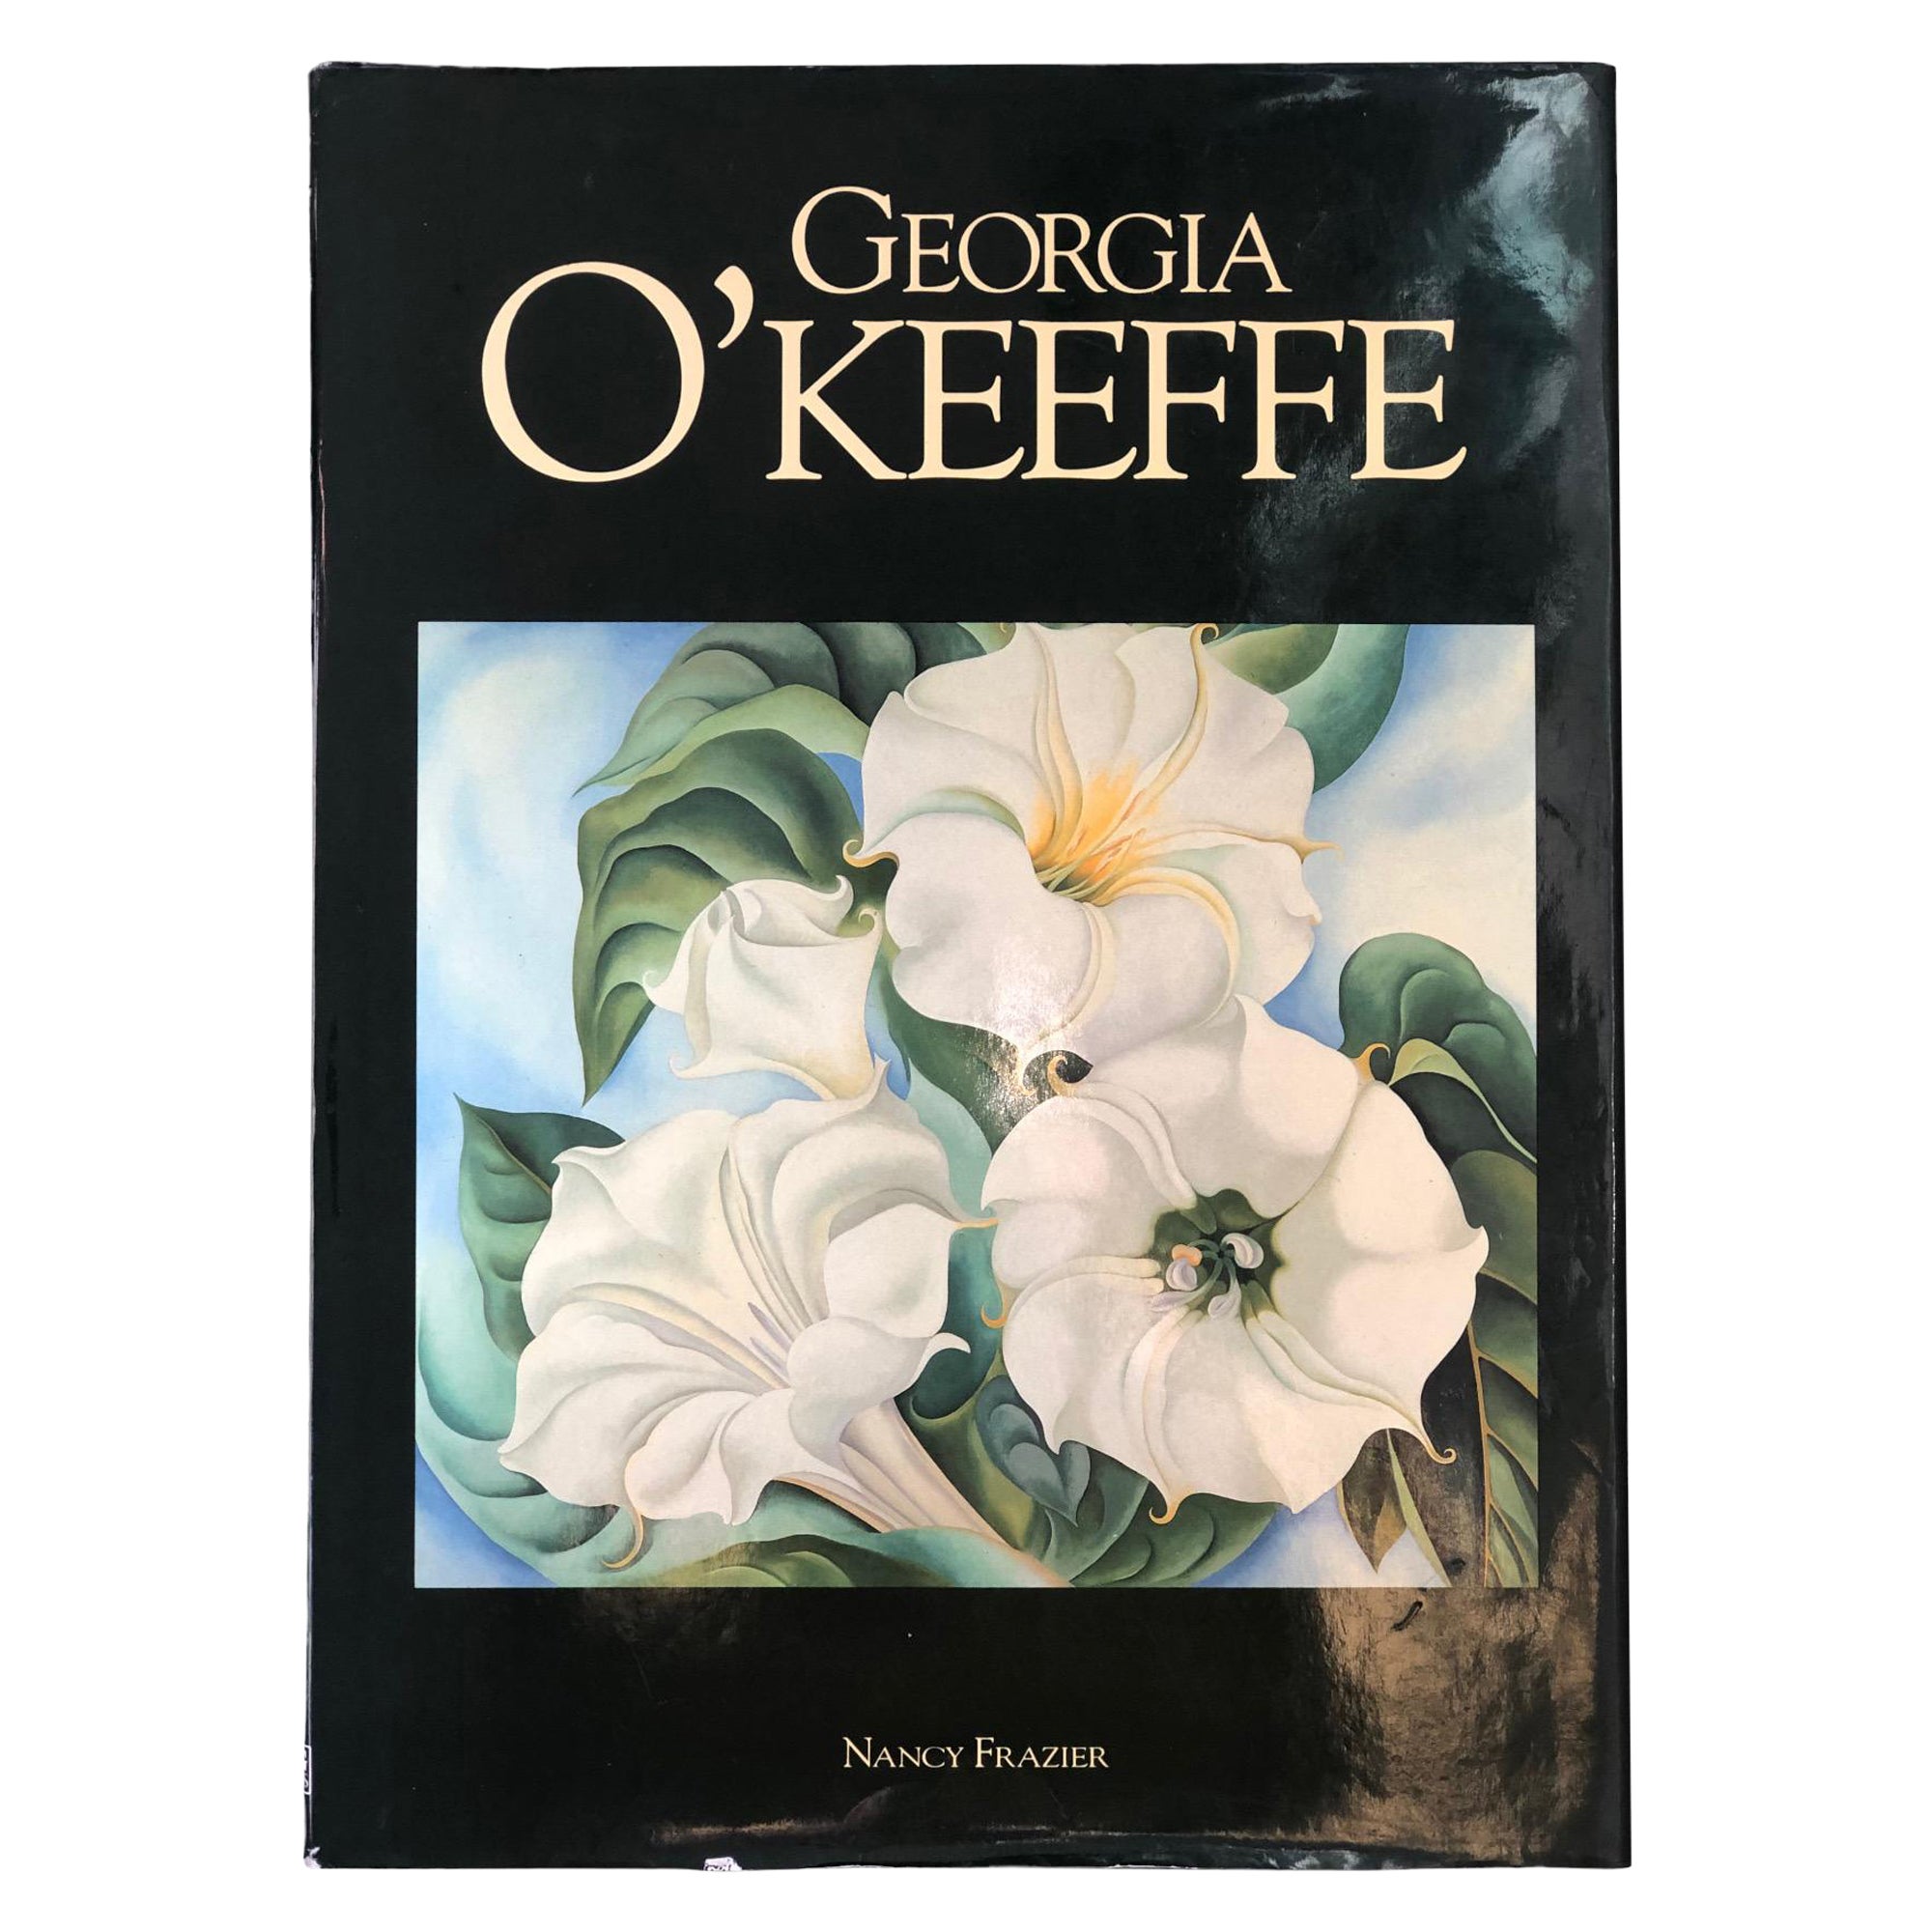 Georgia O'Keeffe by Nancy Frazier